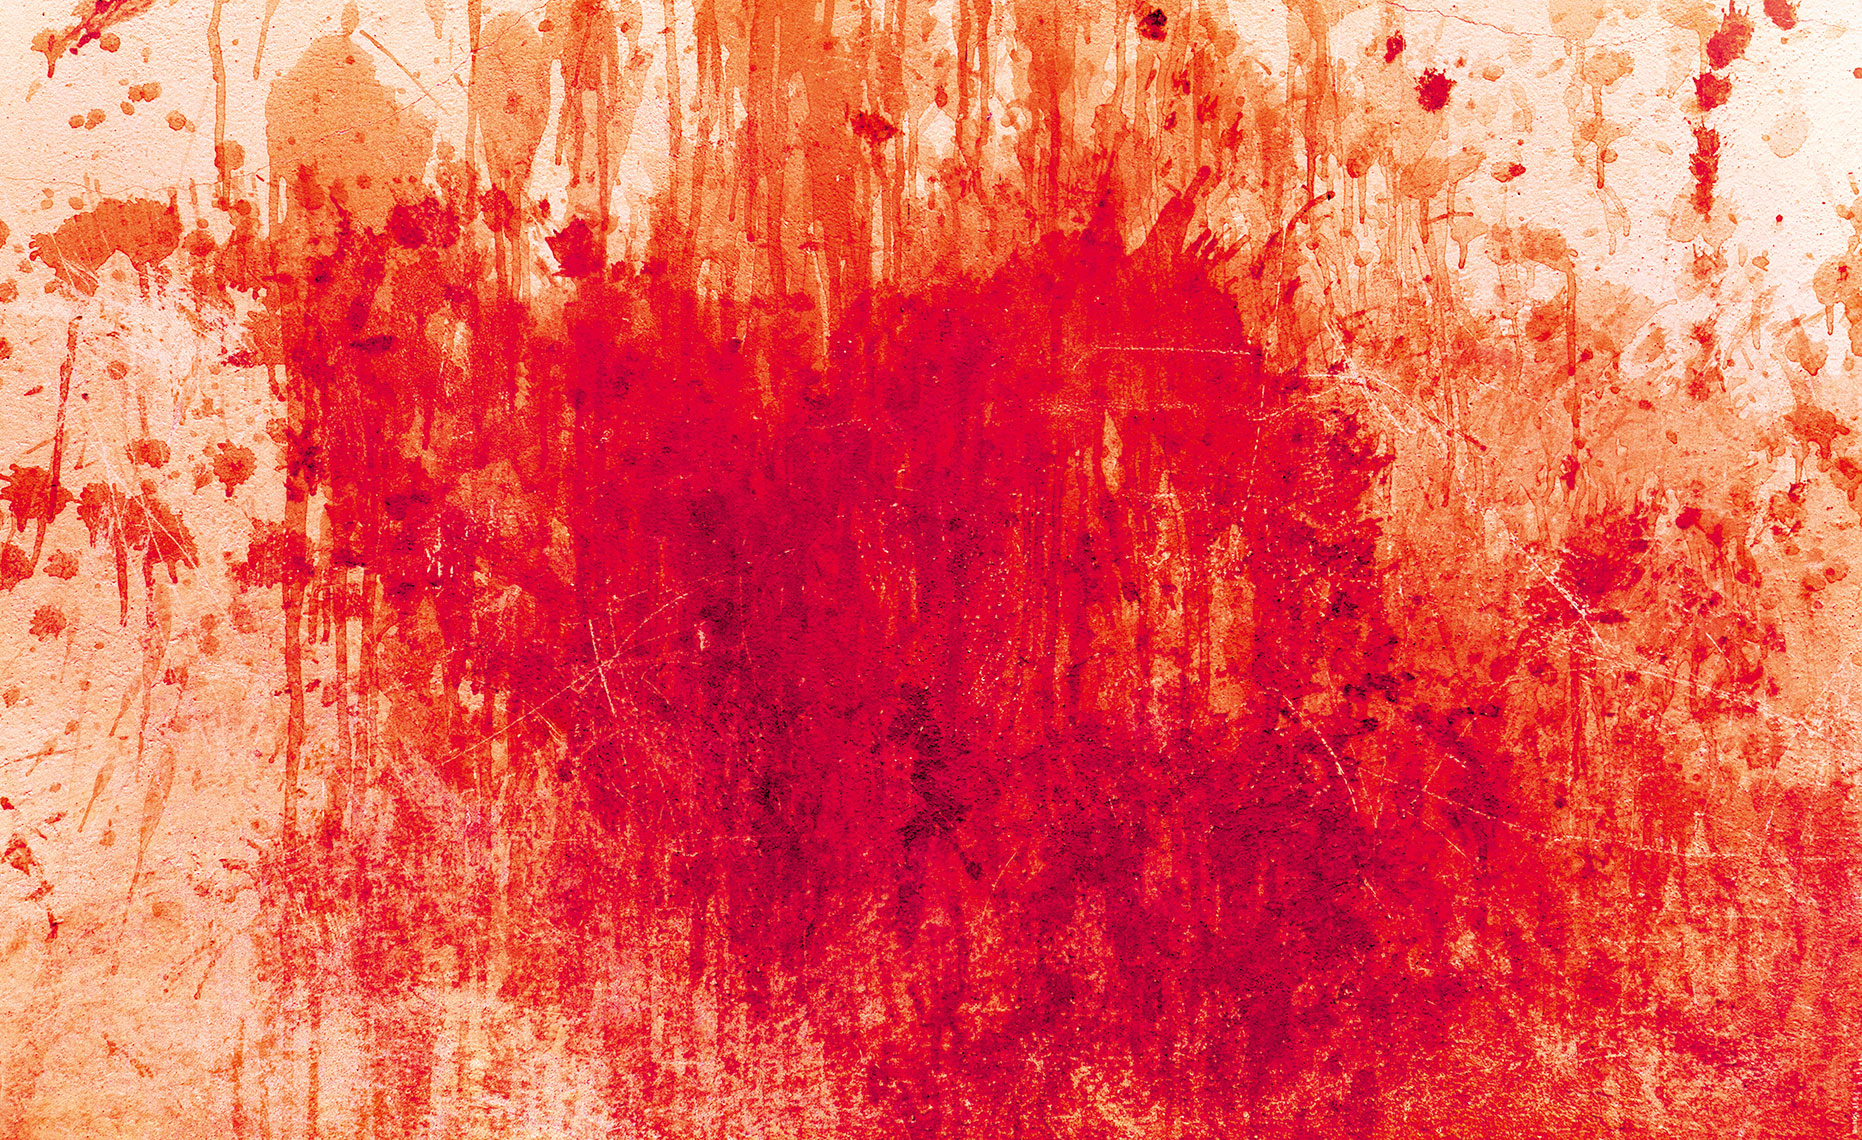 Красные стоки. Красная кирпичная стена с кровью. Агрессивная картинка с кровью.